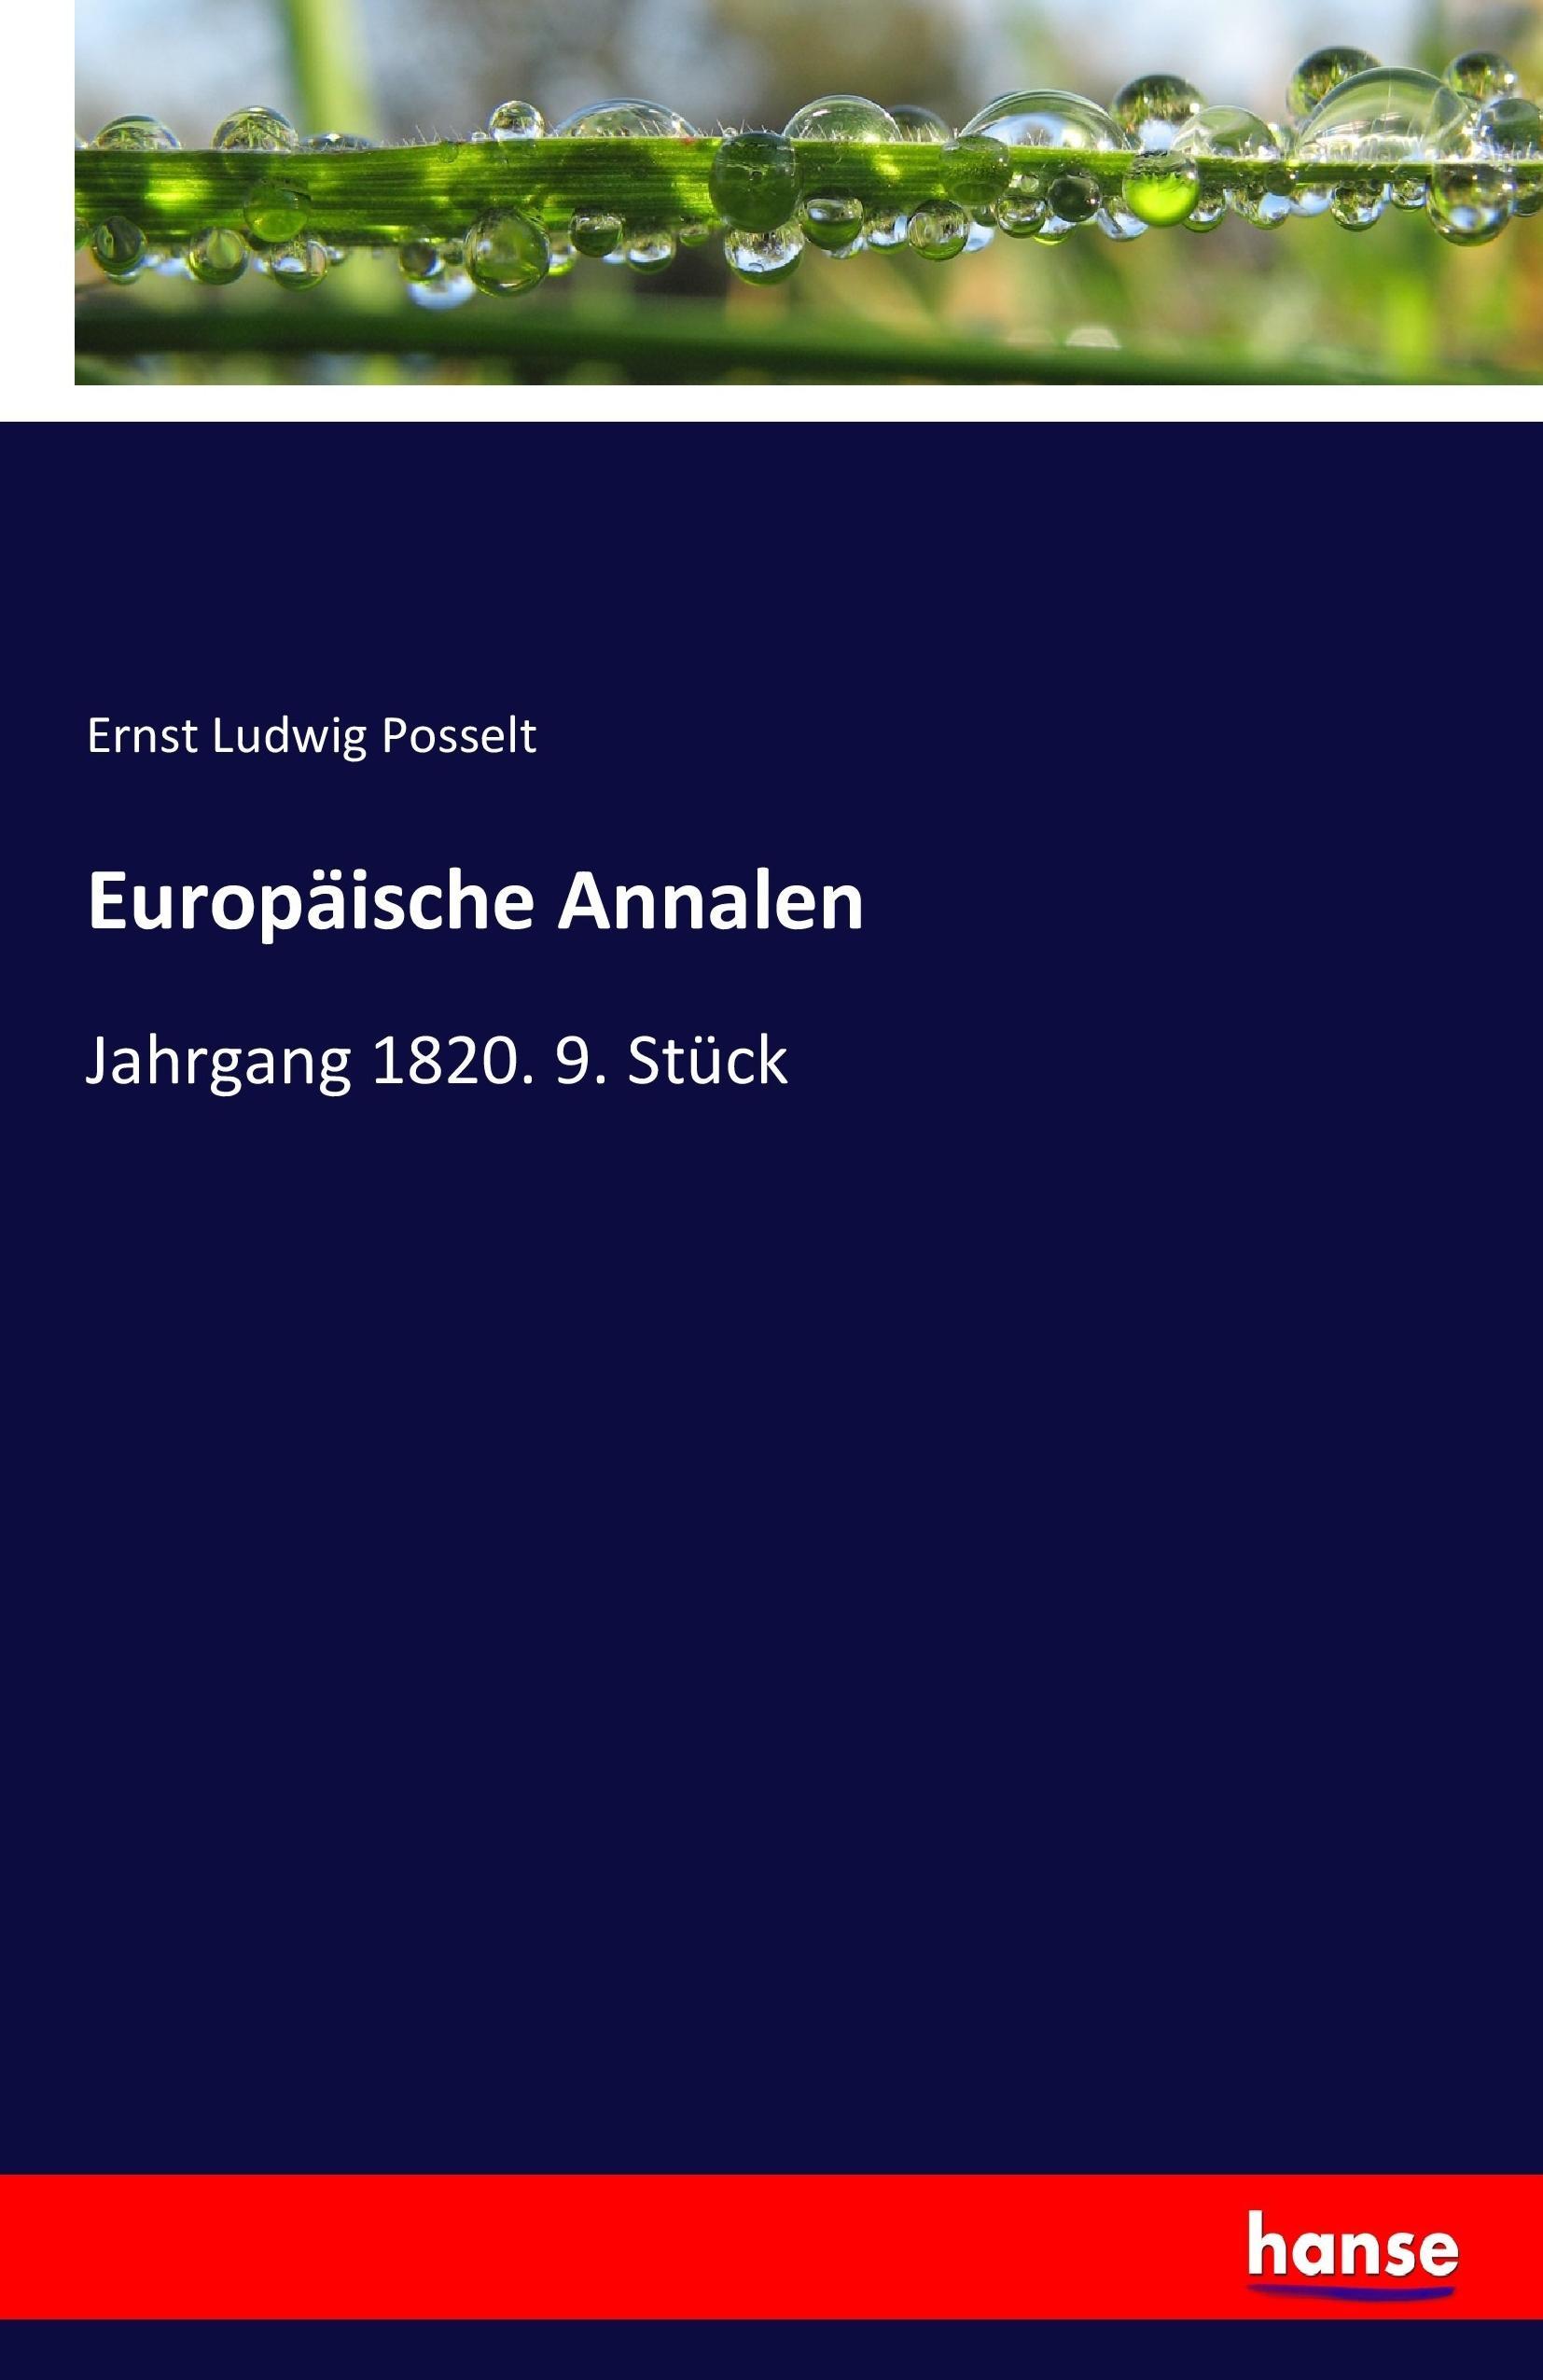 Europäische Annalen | Jahrgang 1820. 9. Stück | Ernst Ludwig Posselt | Taschenbuch | Paperback | 136 S. | Deutsch | 2017 | hansebooks | EAN 9783744684552 - Posselt, Ernst Ludwig